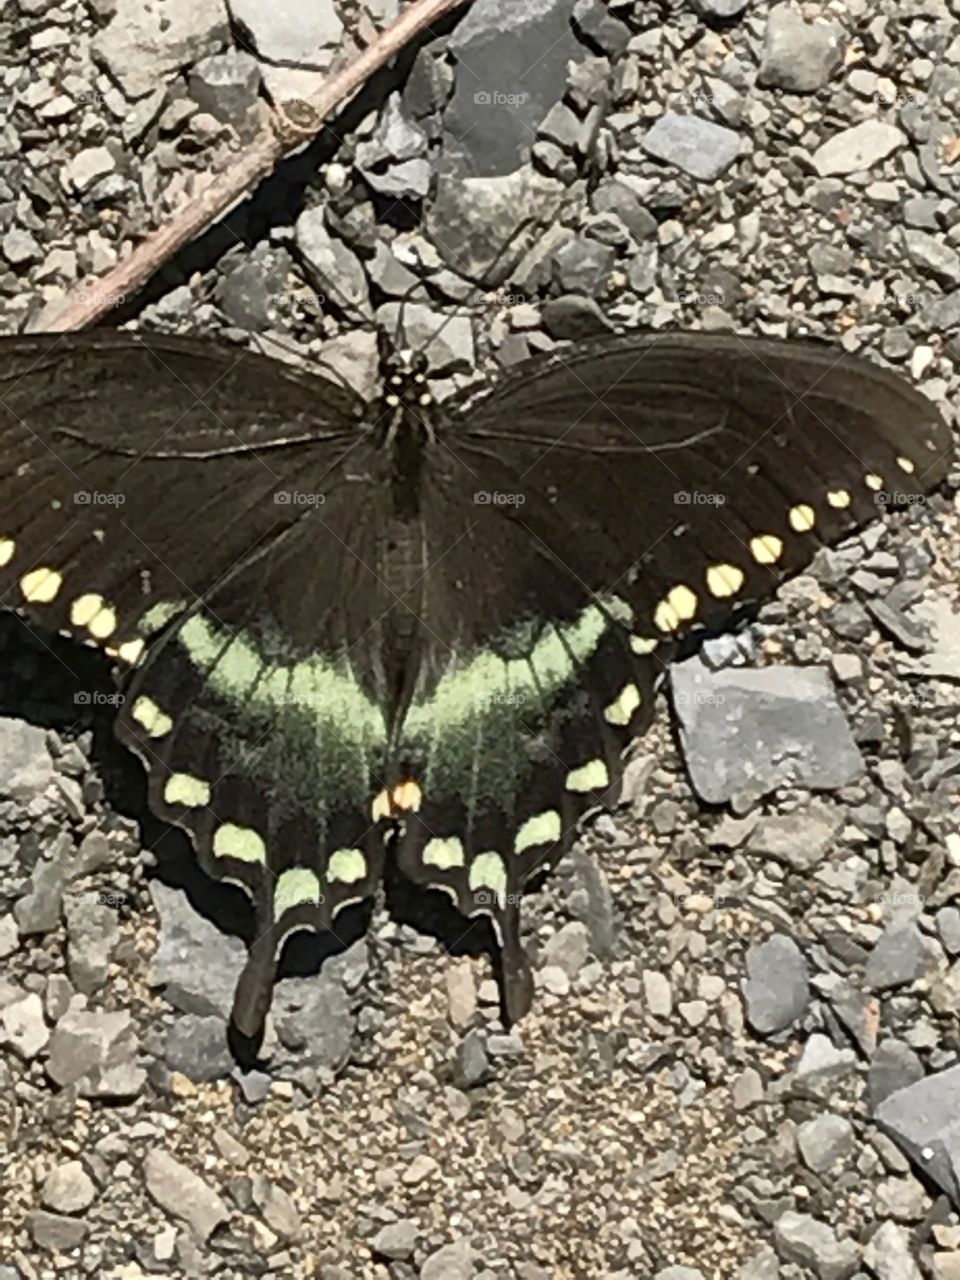 Wild  Butterfly in Rensselaer, NY. 